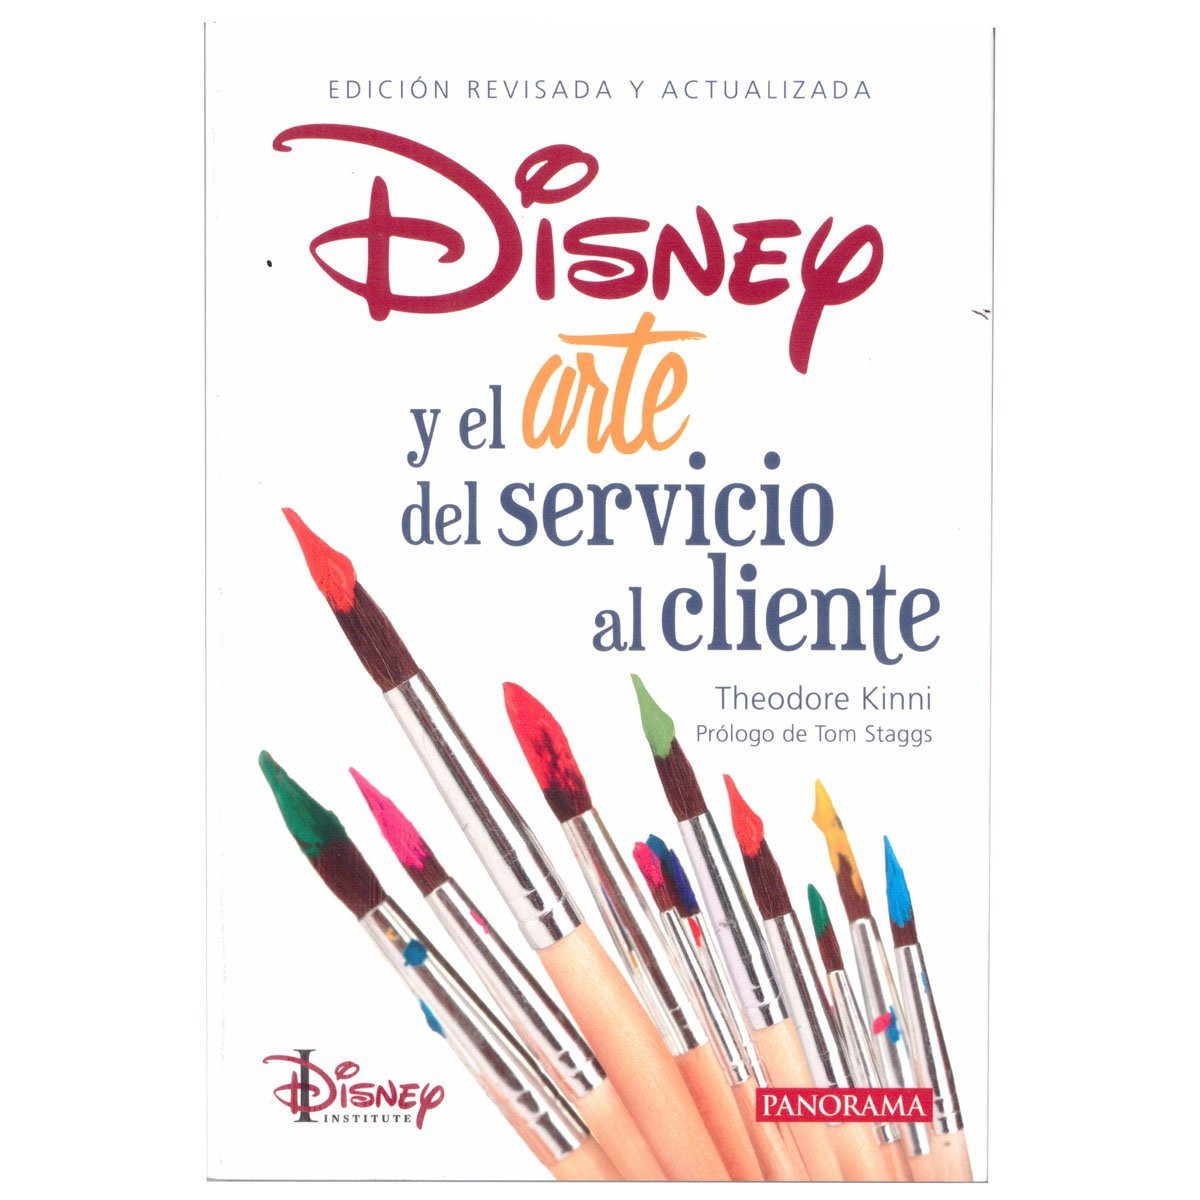 Disney y el Arte Del Servicio al Cliente, Theodore Kinni. Panorama